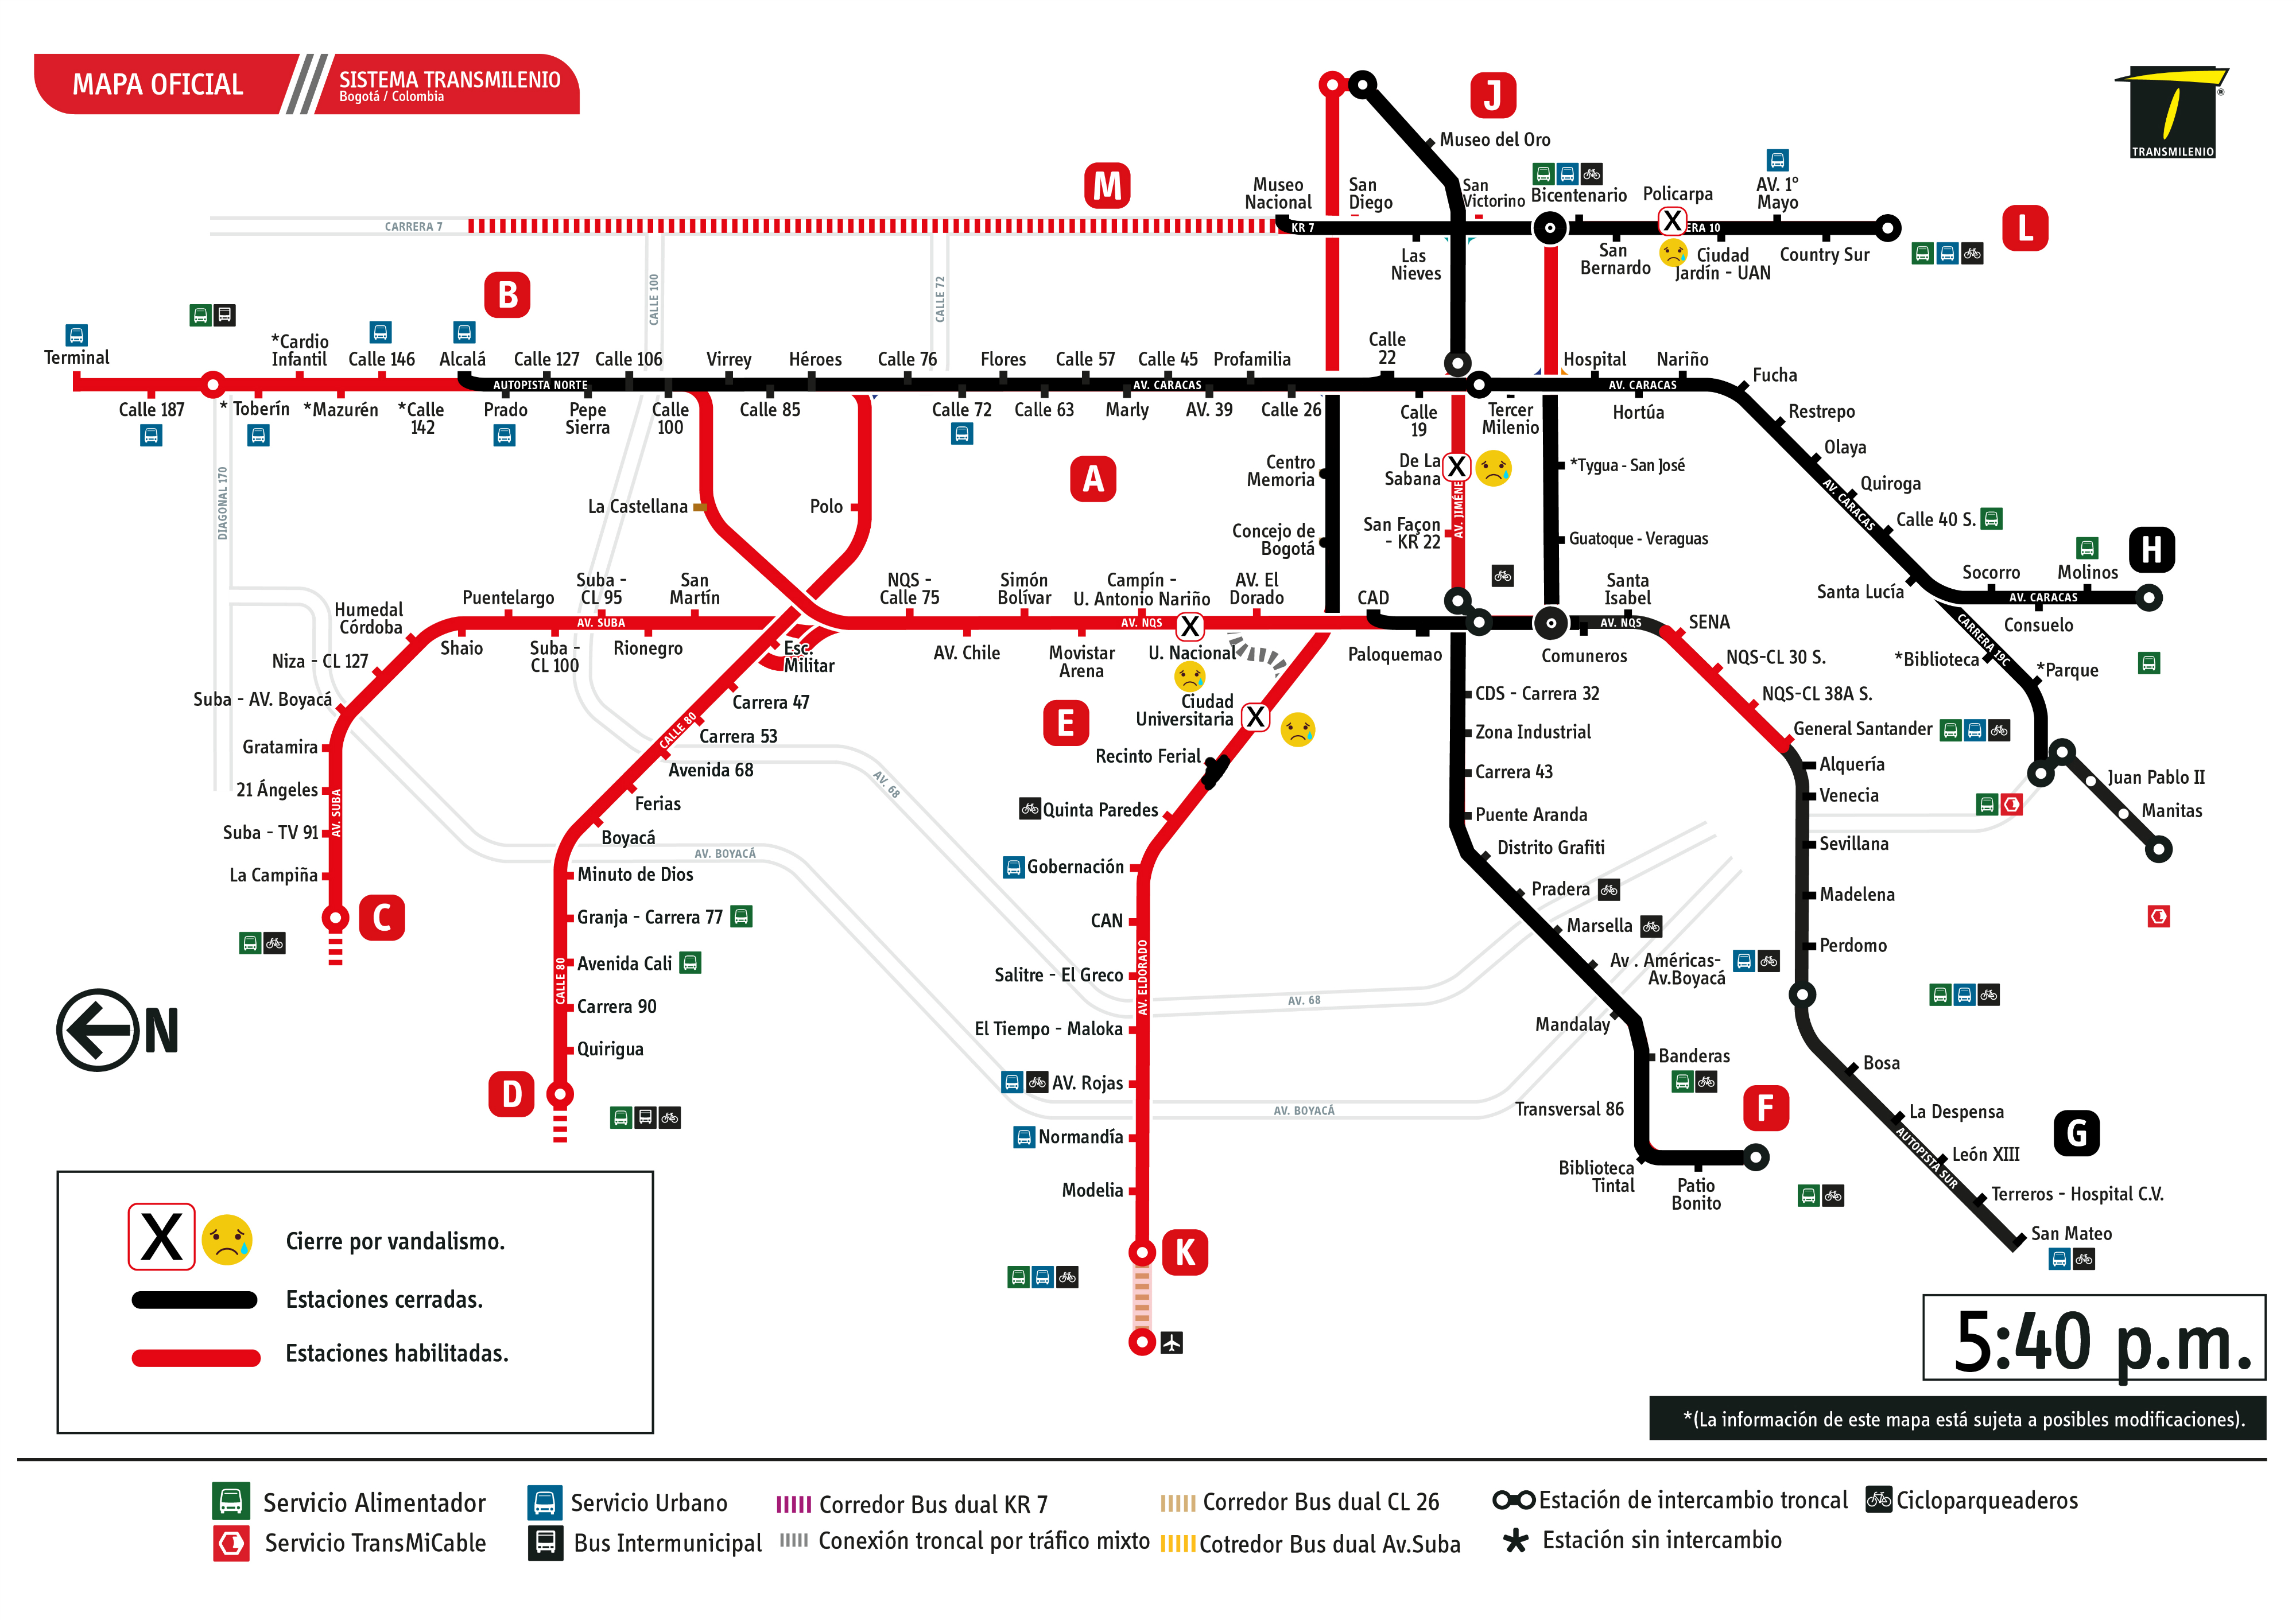 Mapa de TransMilenio con estaciones habilitadas